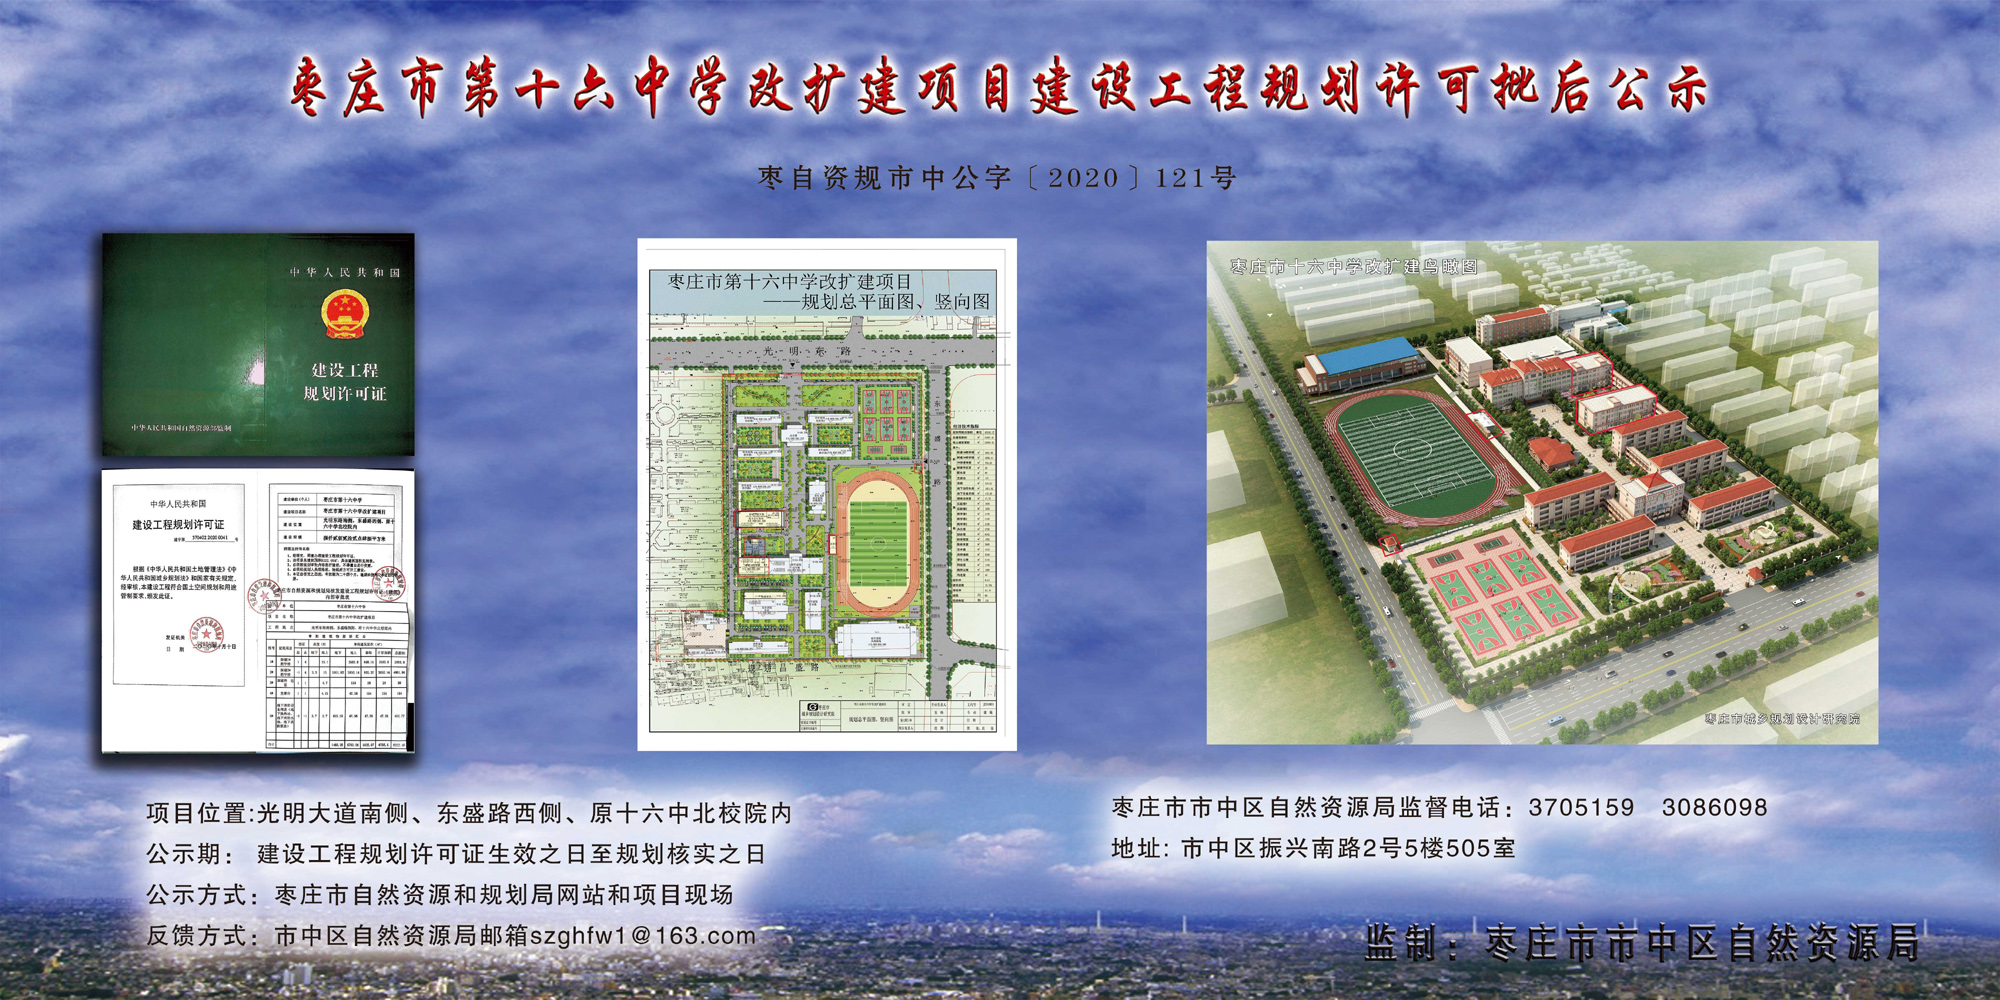 枣庄市第十六中学改扩建项目建设工程规划许可批后公示